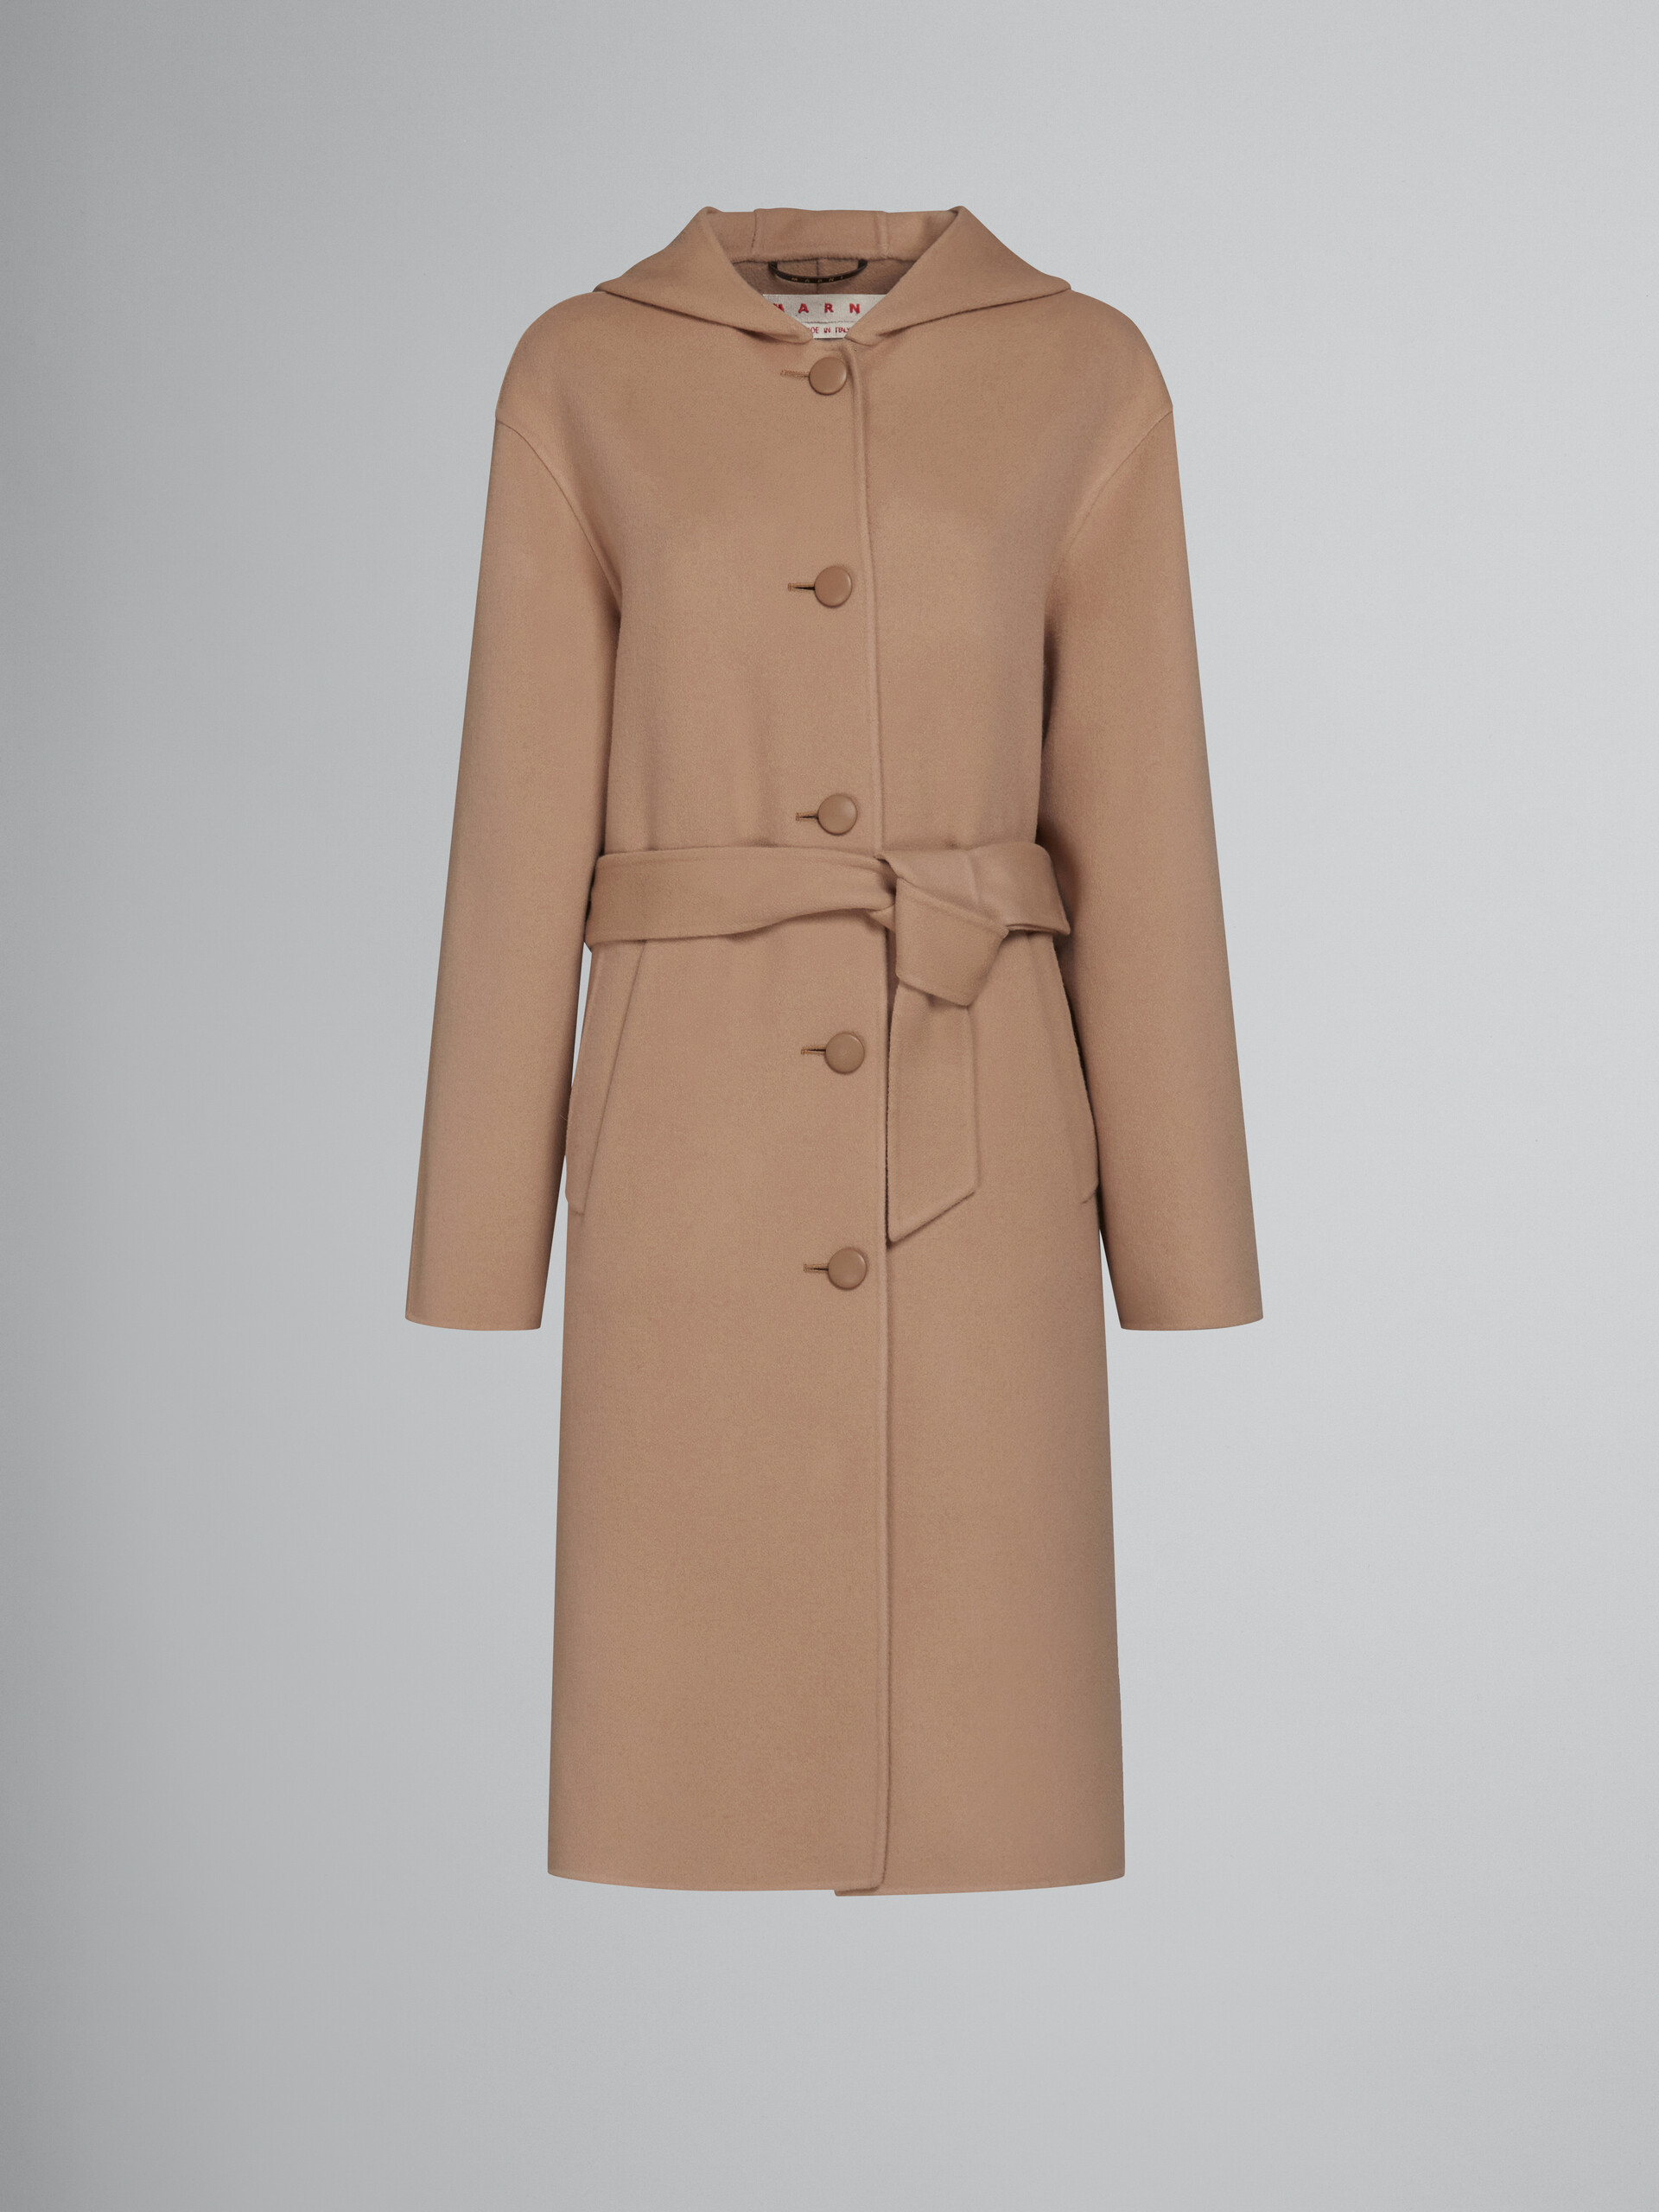 Beige wool coat with waist belt - Coat - Image 1